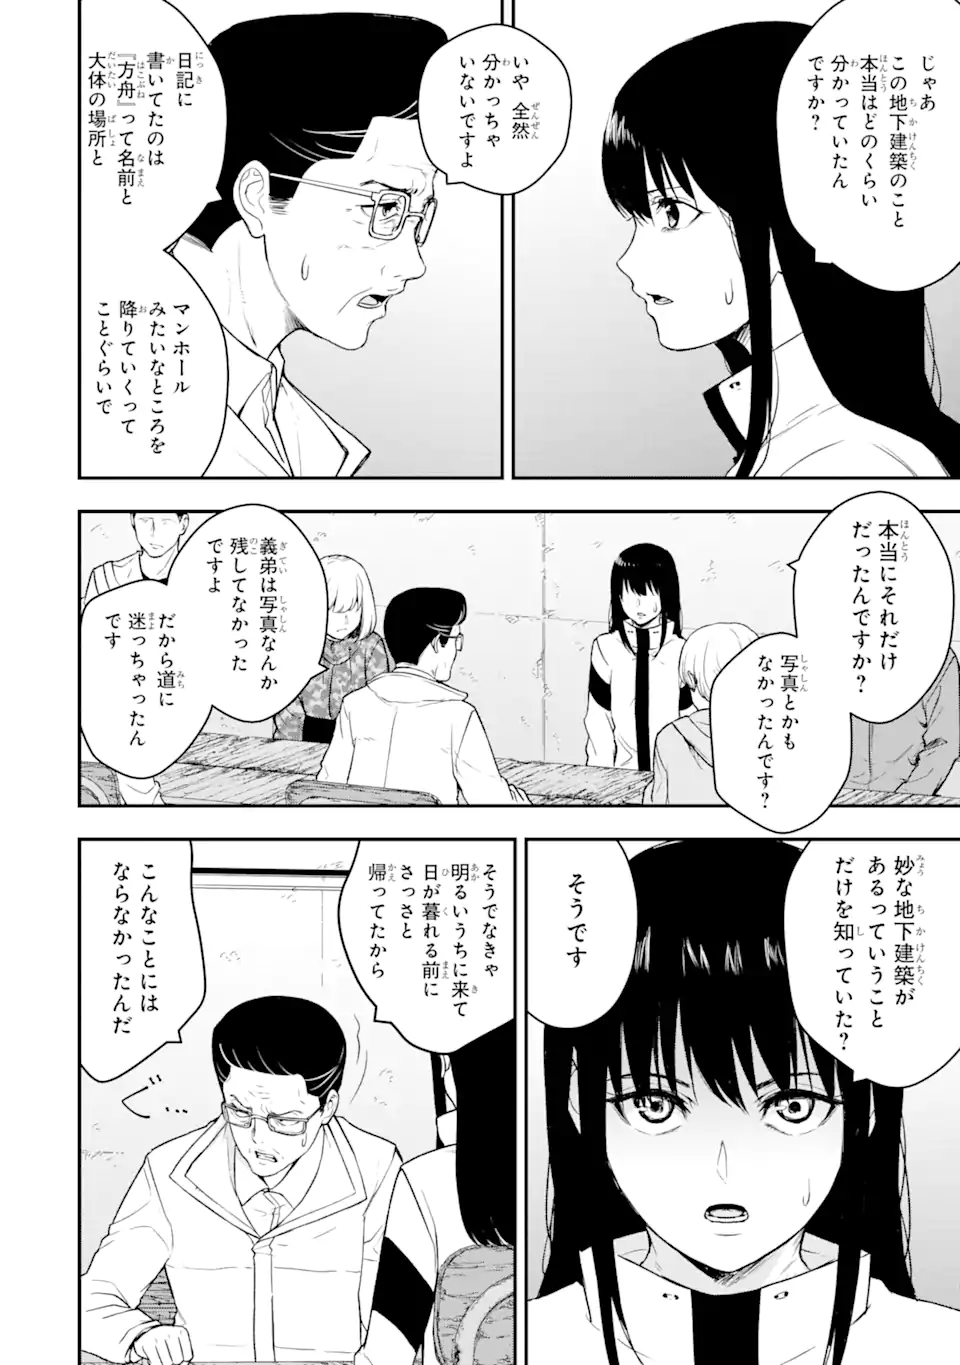 Hakobune – Shinubeki na no wa Dare ka? - Chapter 7.3 - Page 1